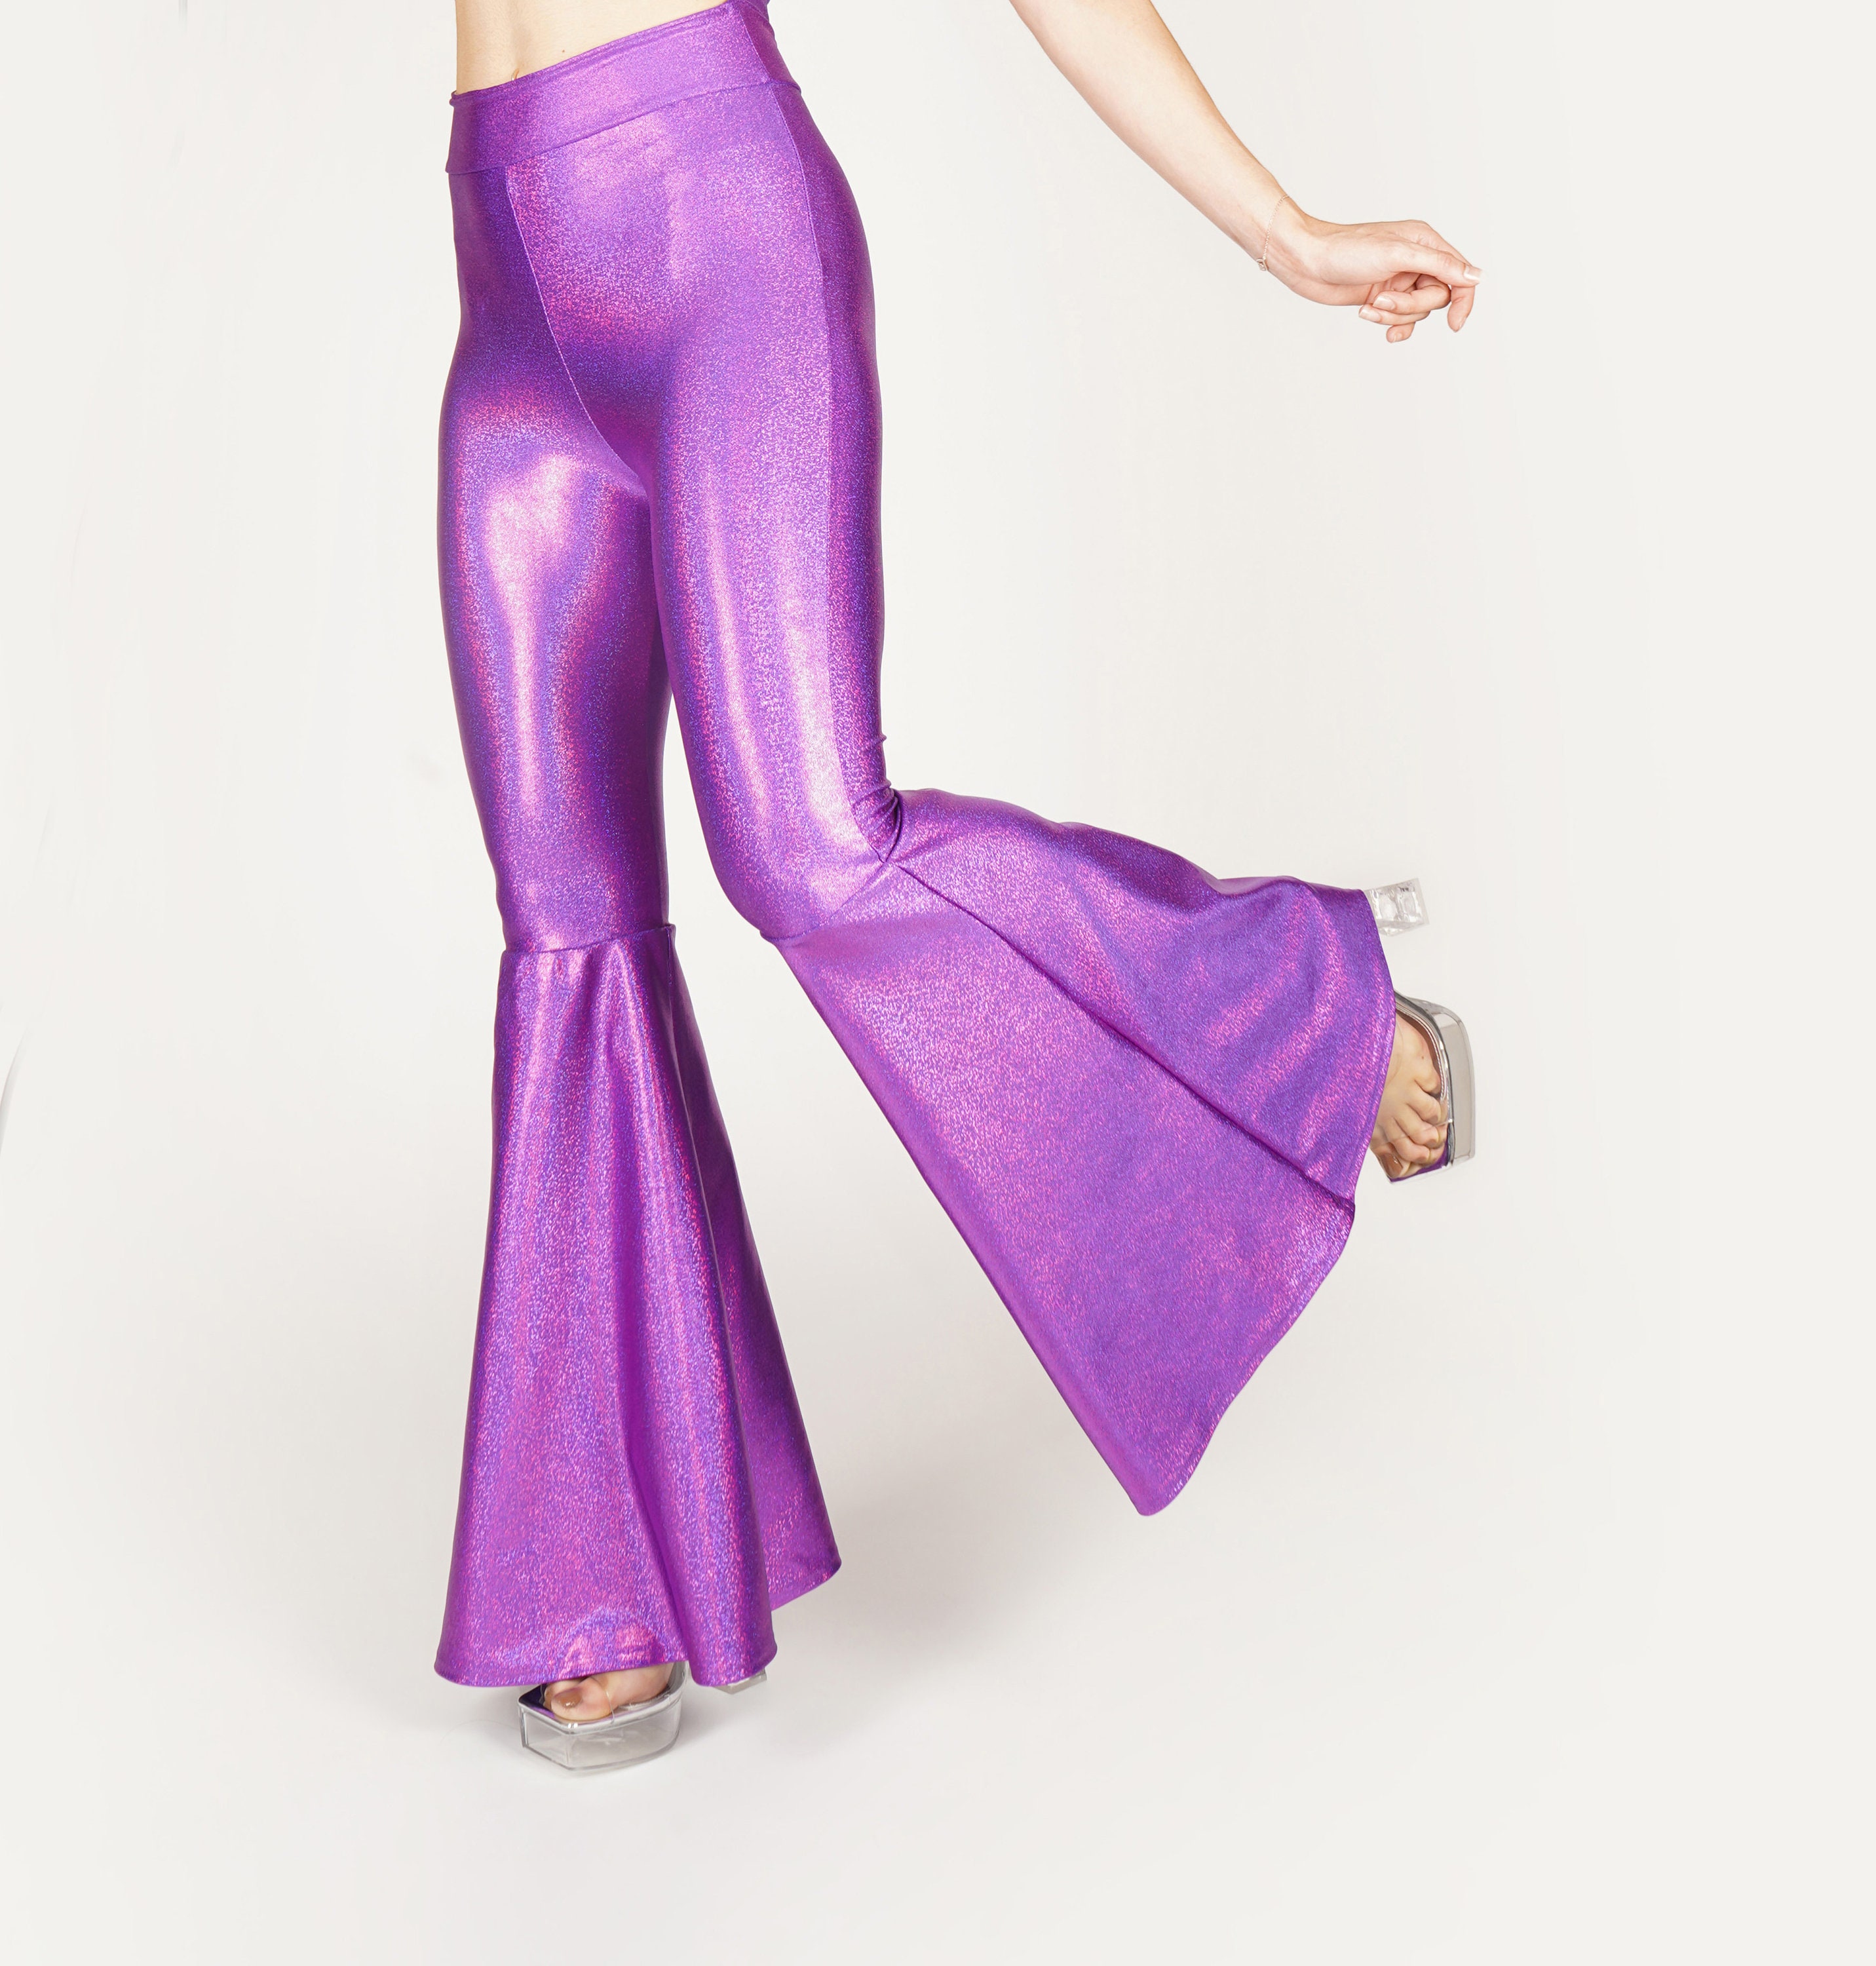 Purple Crushed Velvet Flare Leggings Customizable High Waisted